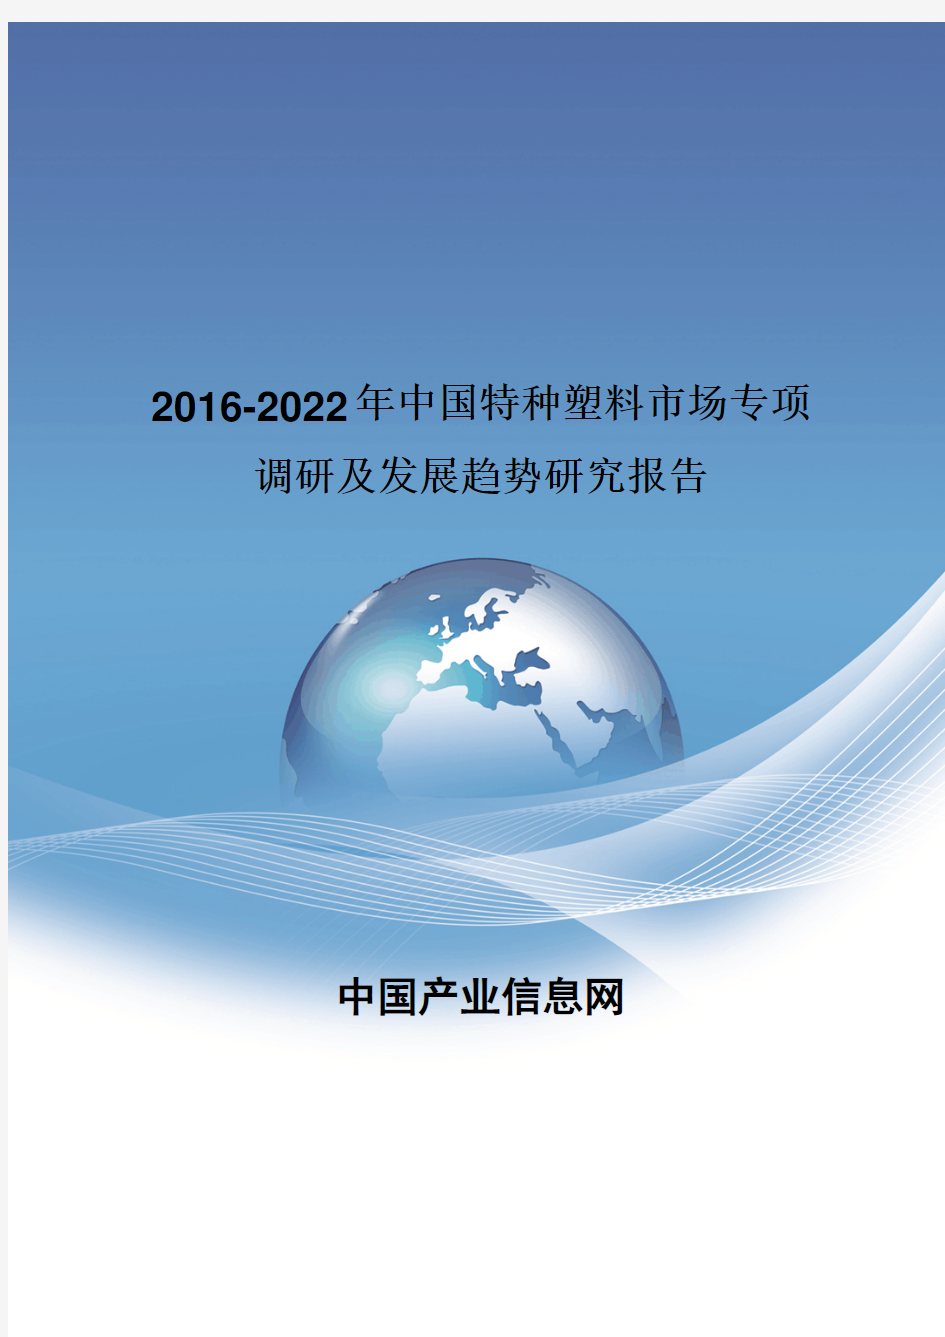 2016-2022年中国特种塑料发展趋势研究报告